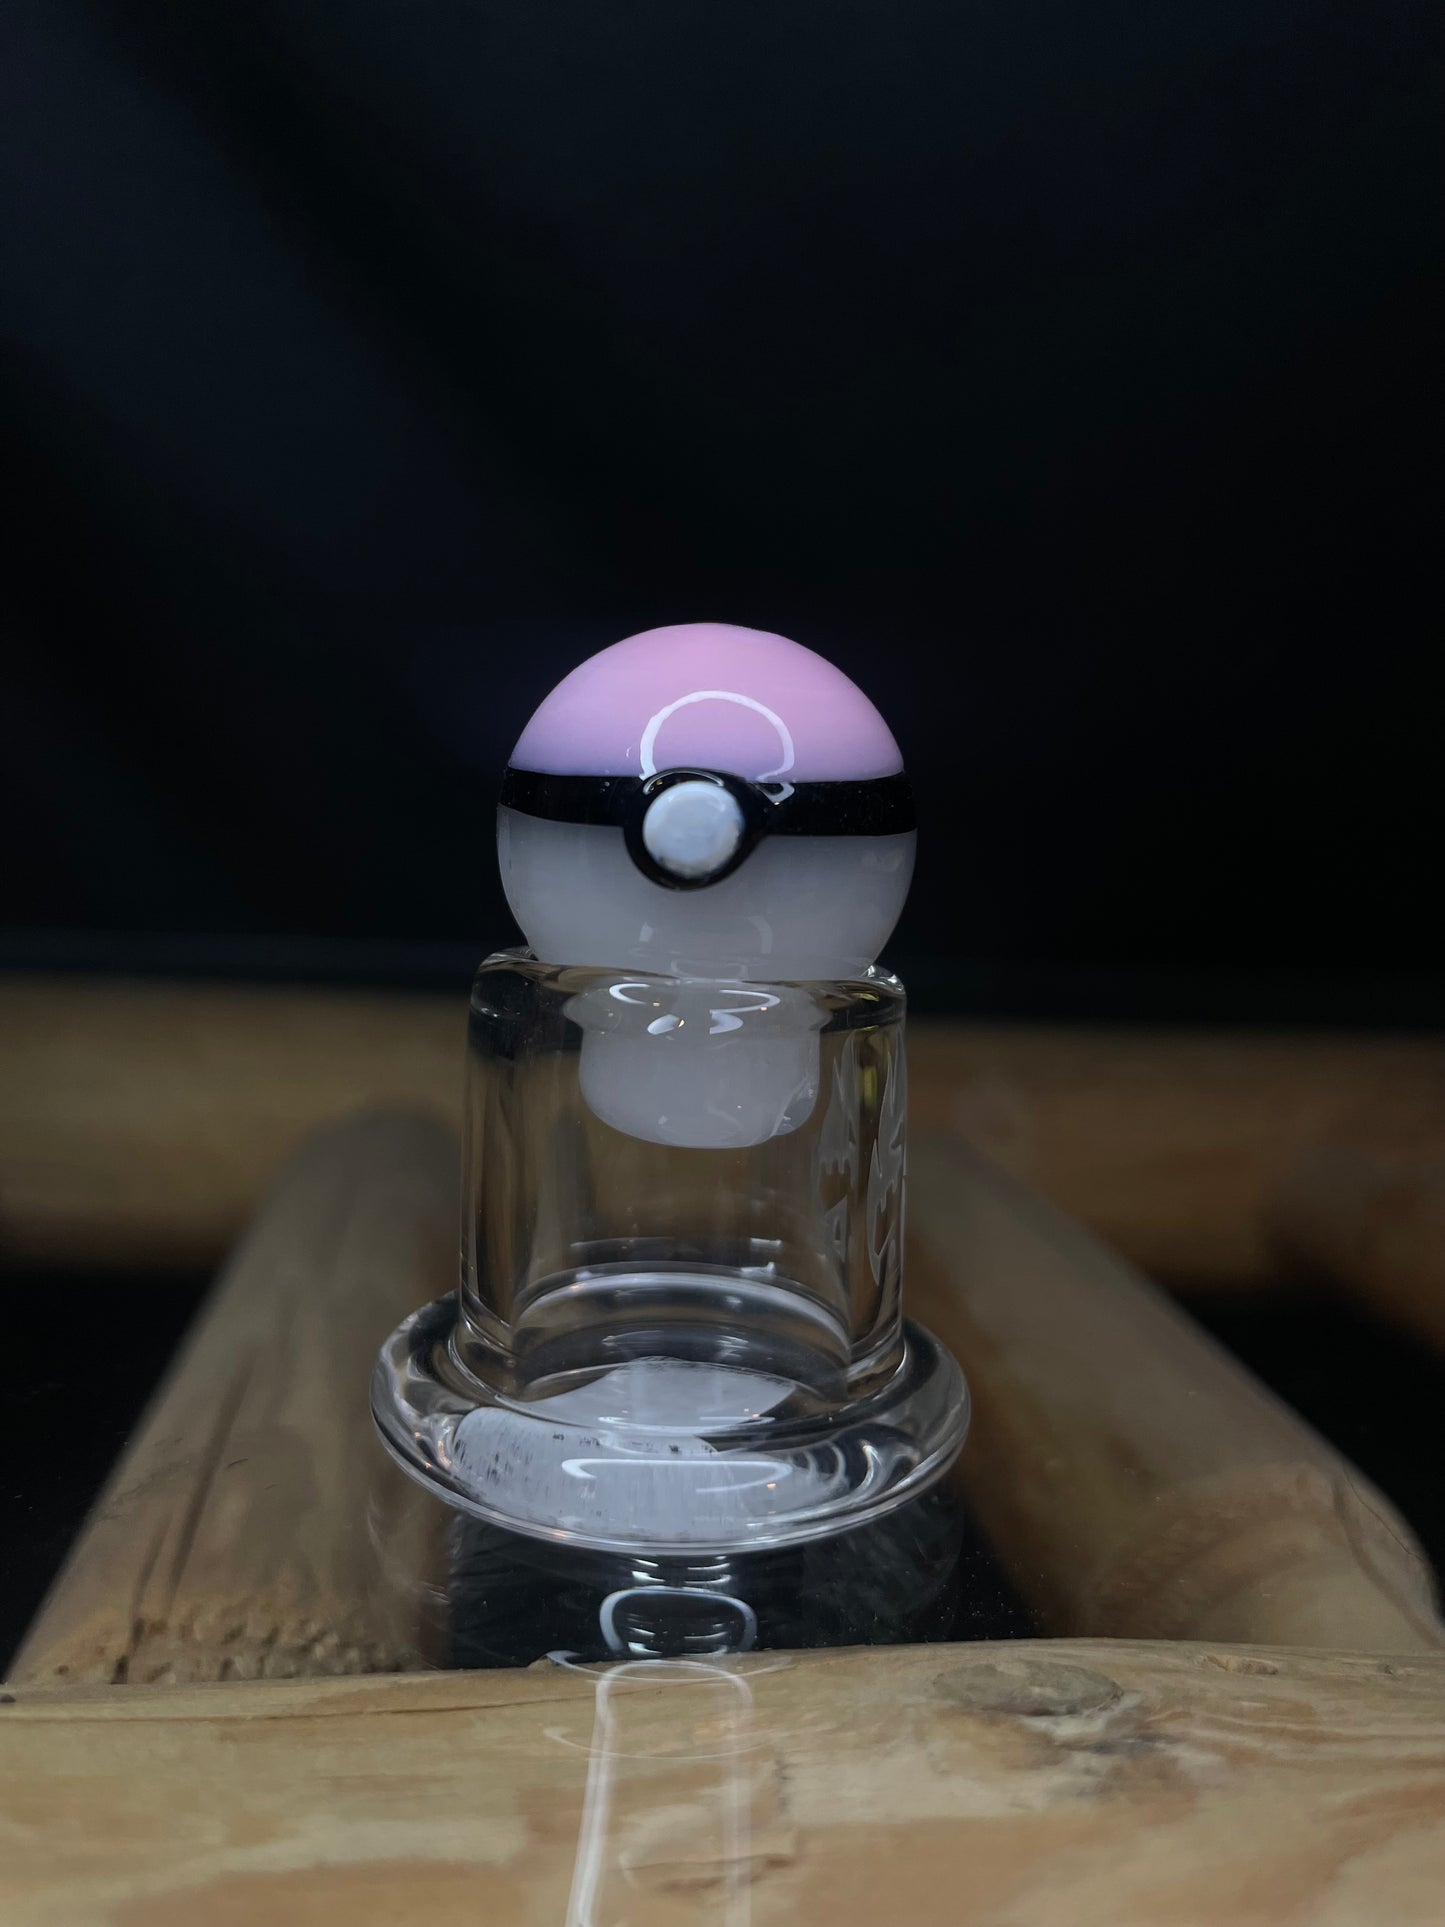 Pokémon Carb Cap